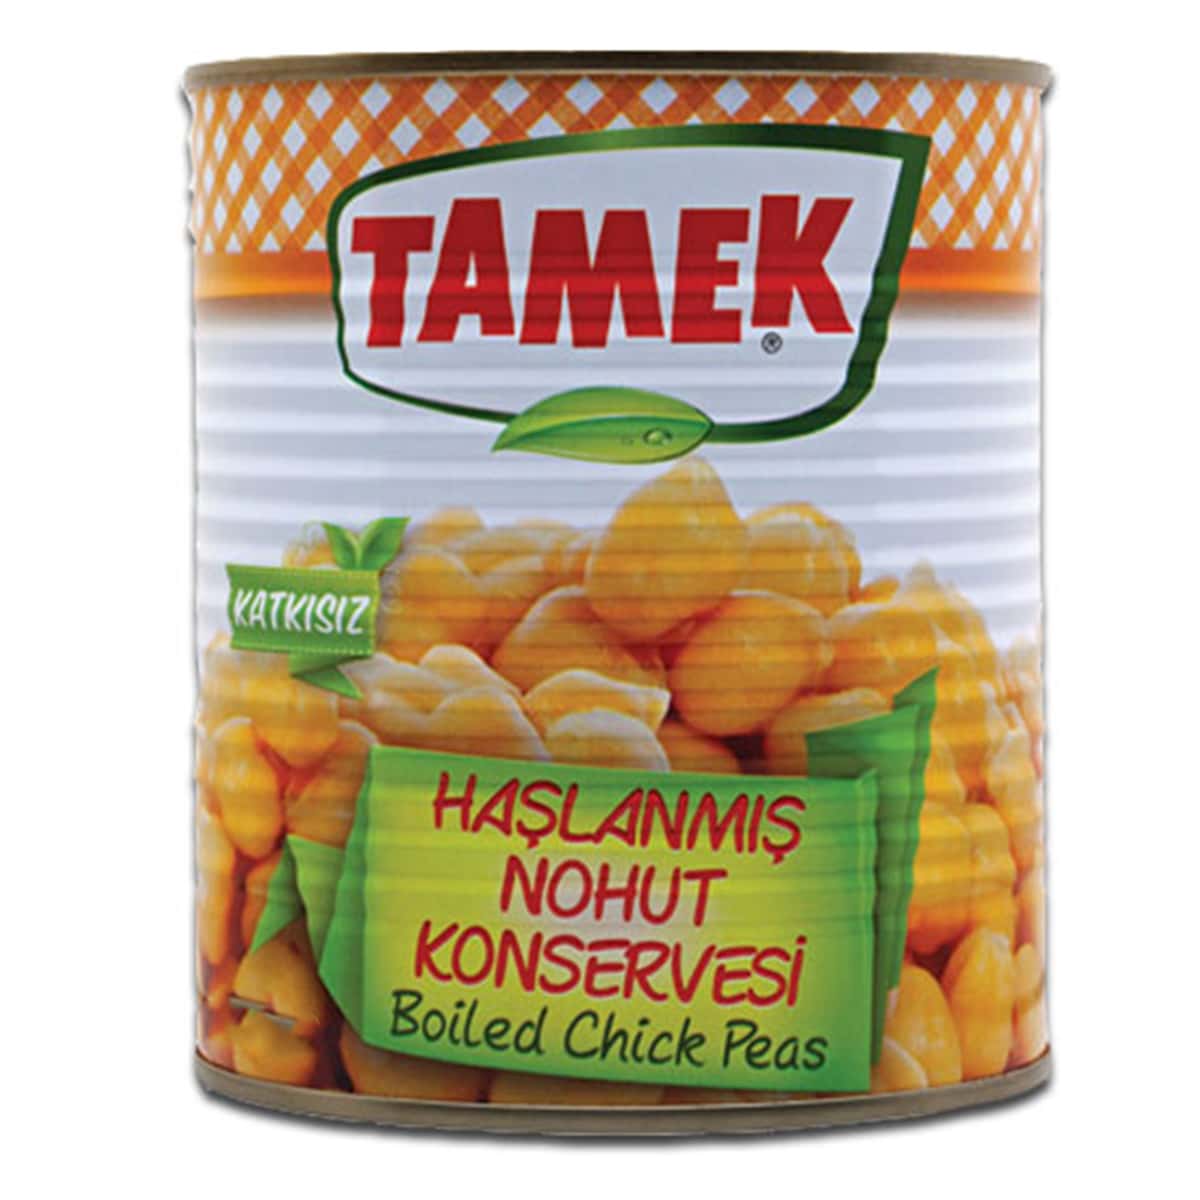 Buy Tamek Boiled Chick Peas (Haslanmis Nohut Konservesi) - 800 gm